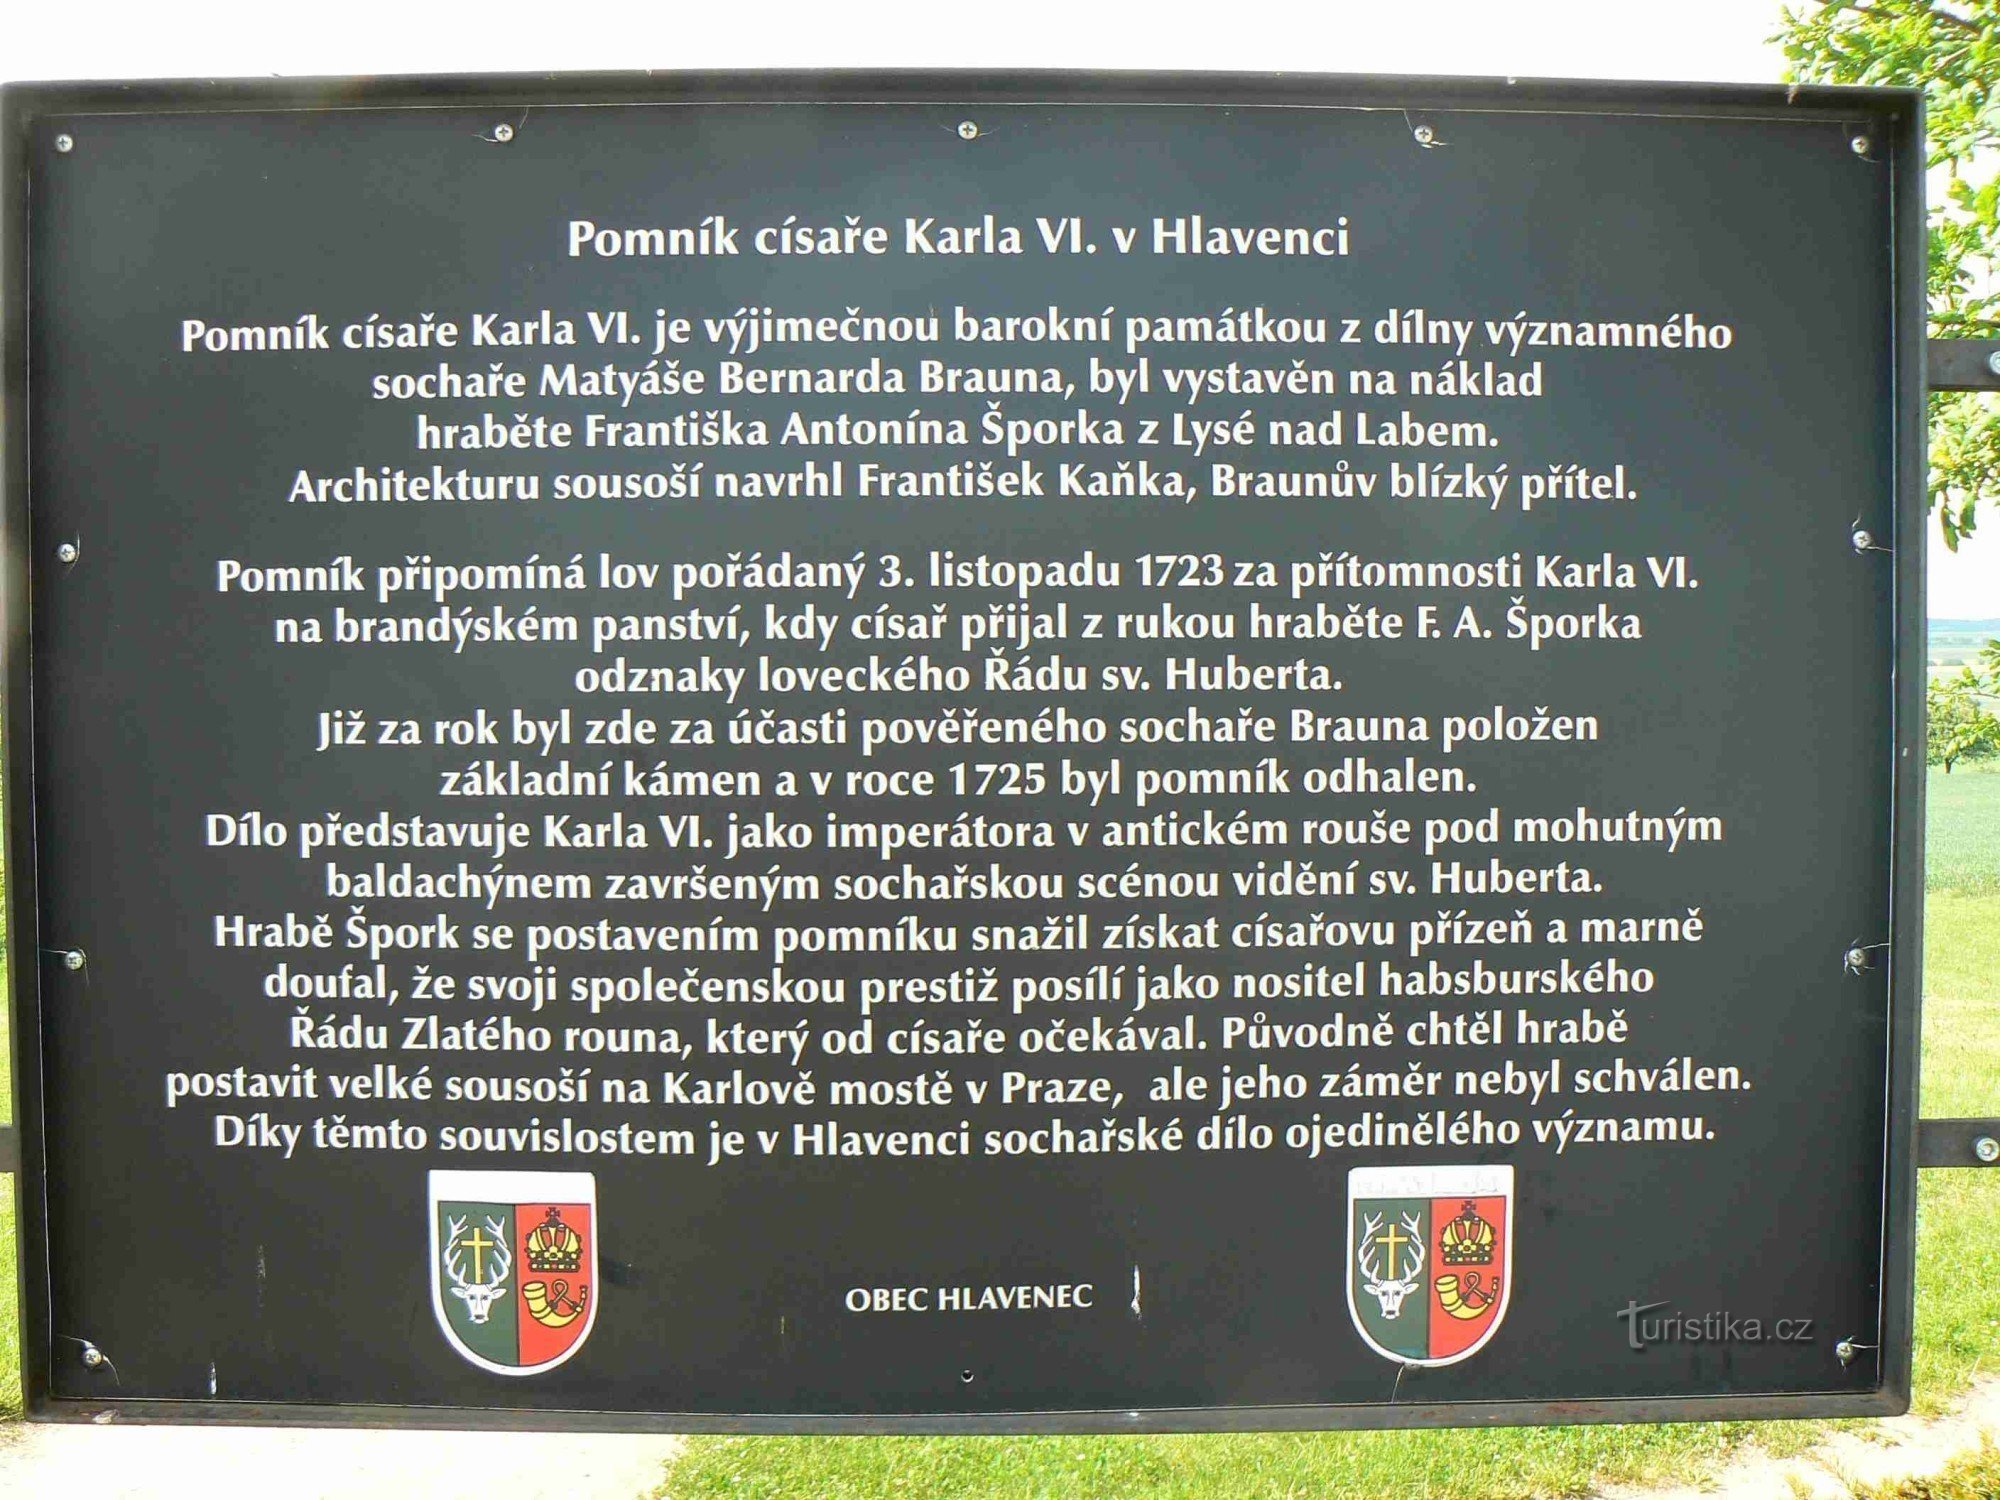 Đài tưởng niệm Hoàng đế Charles VI.